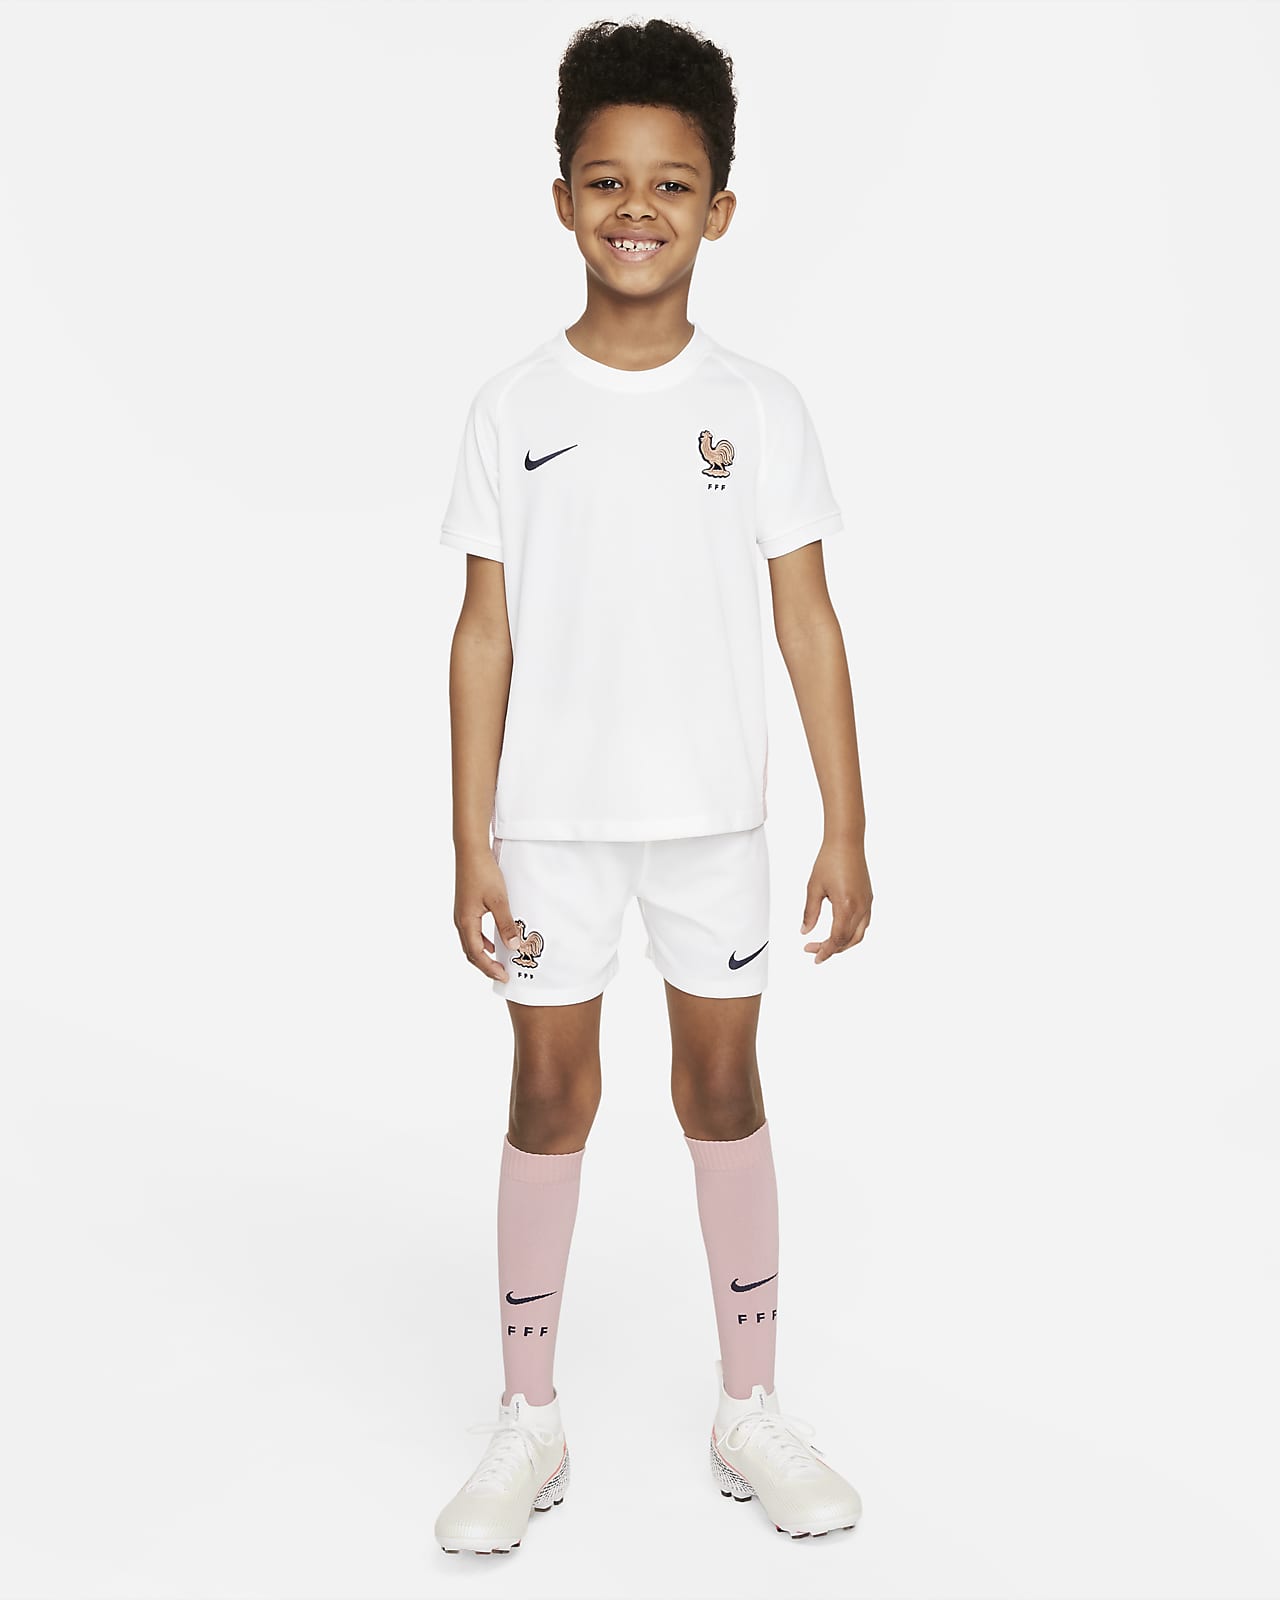 Segunda equipación FFF 2022 Equipación de Nike Football - Niño/a pequeño/a